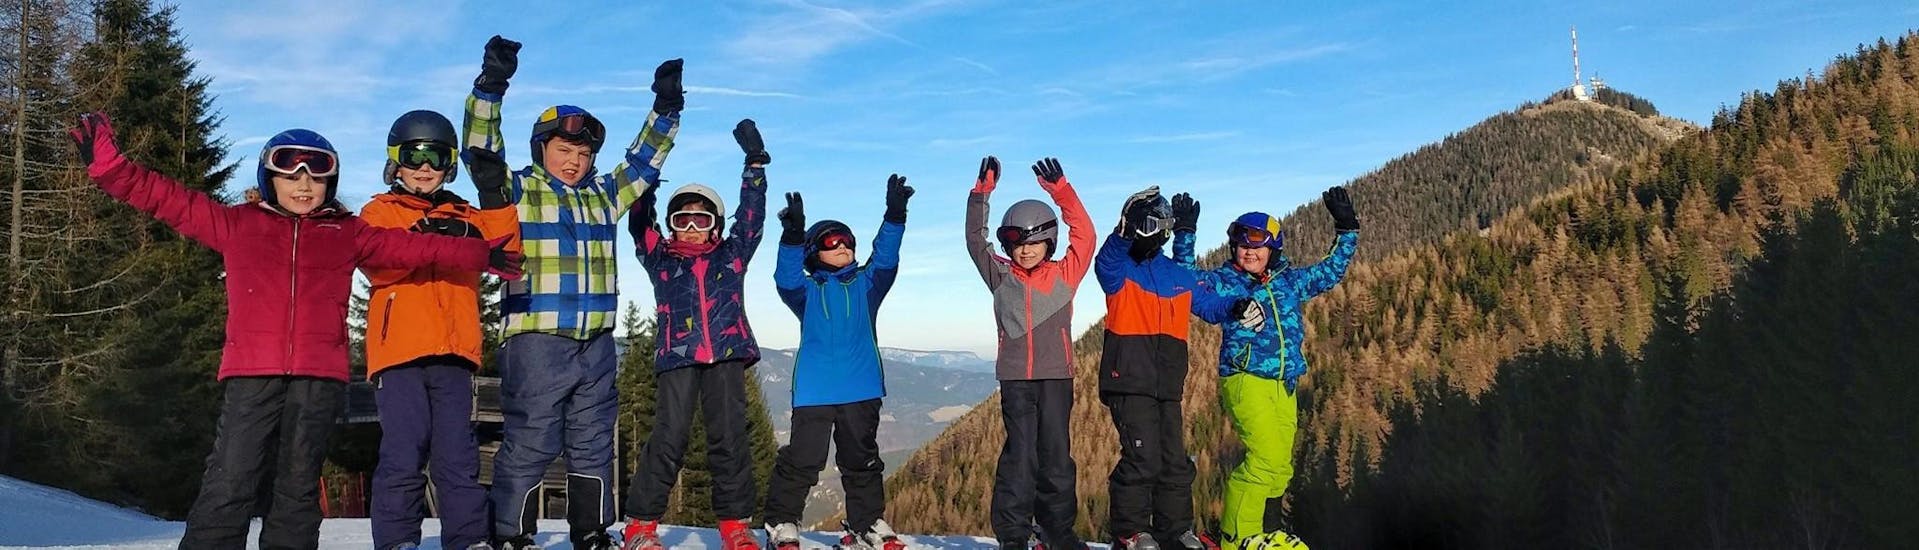 Skilessen voor kinderen vanaf 5 jaar - beginners.